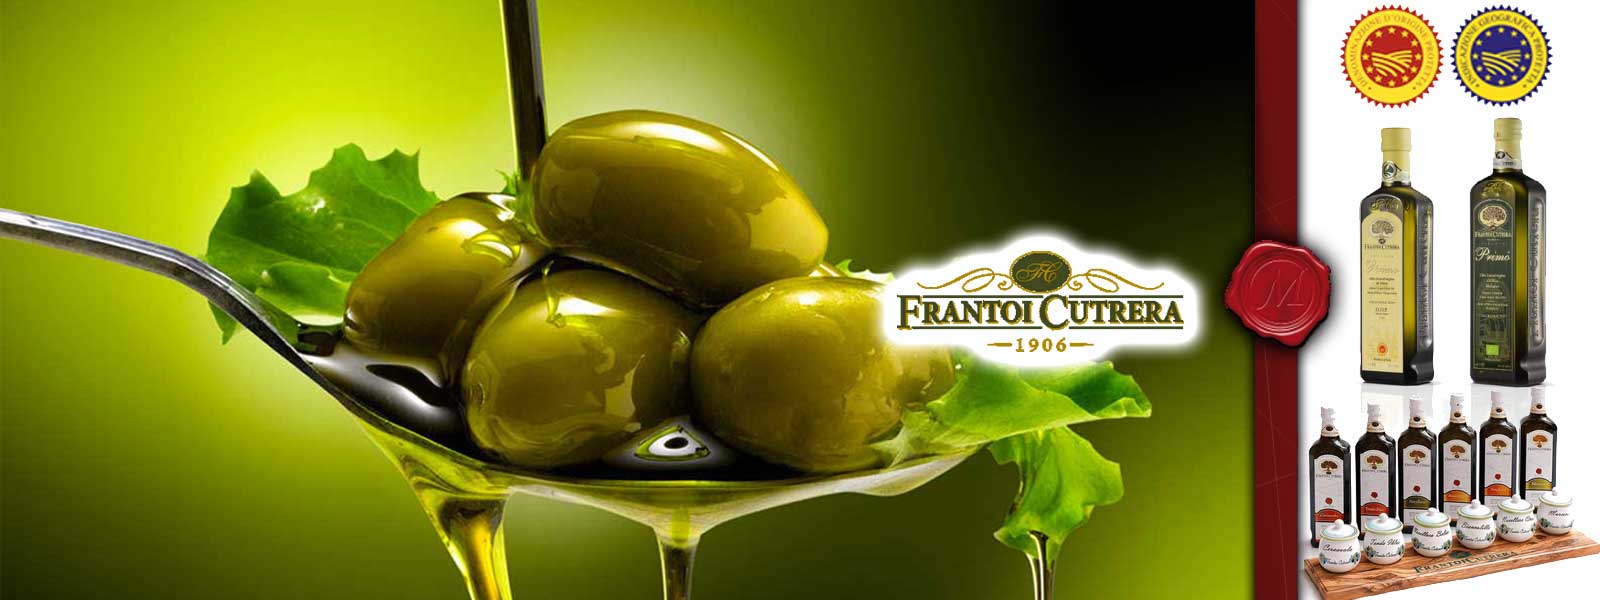 Oljcno olje Frantoi Cutrera 